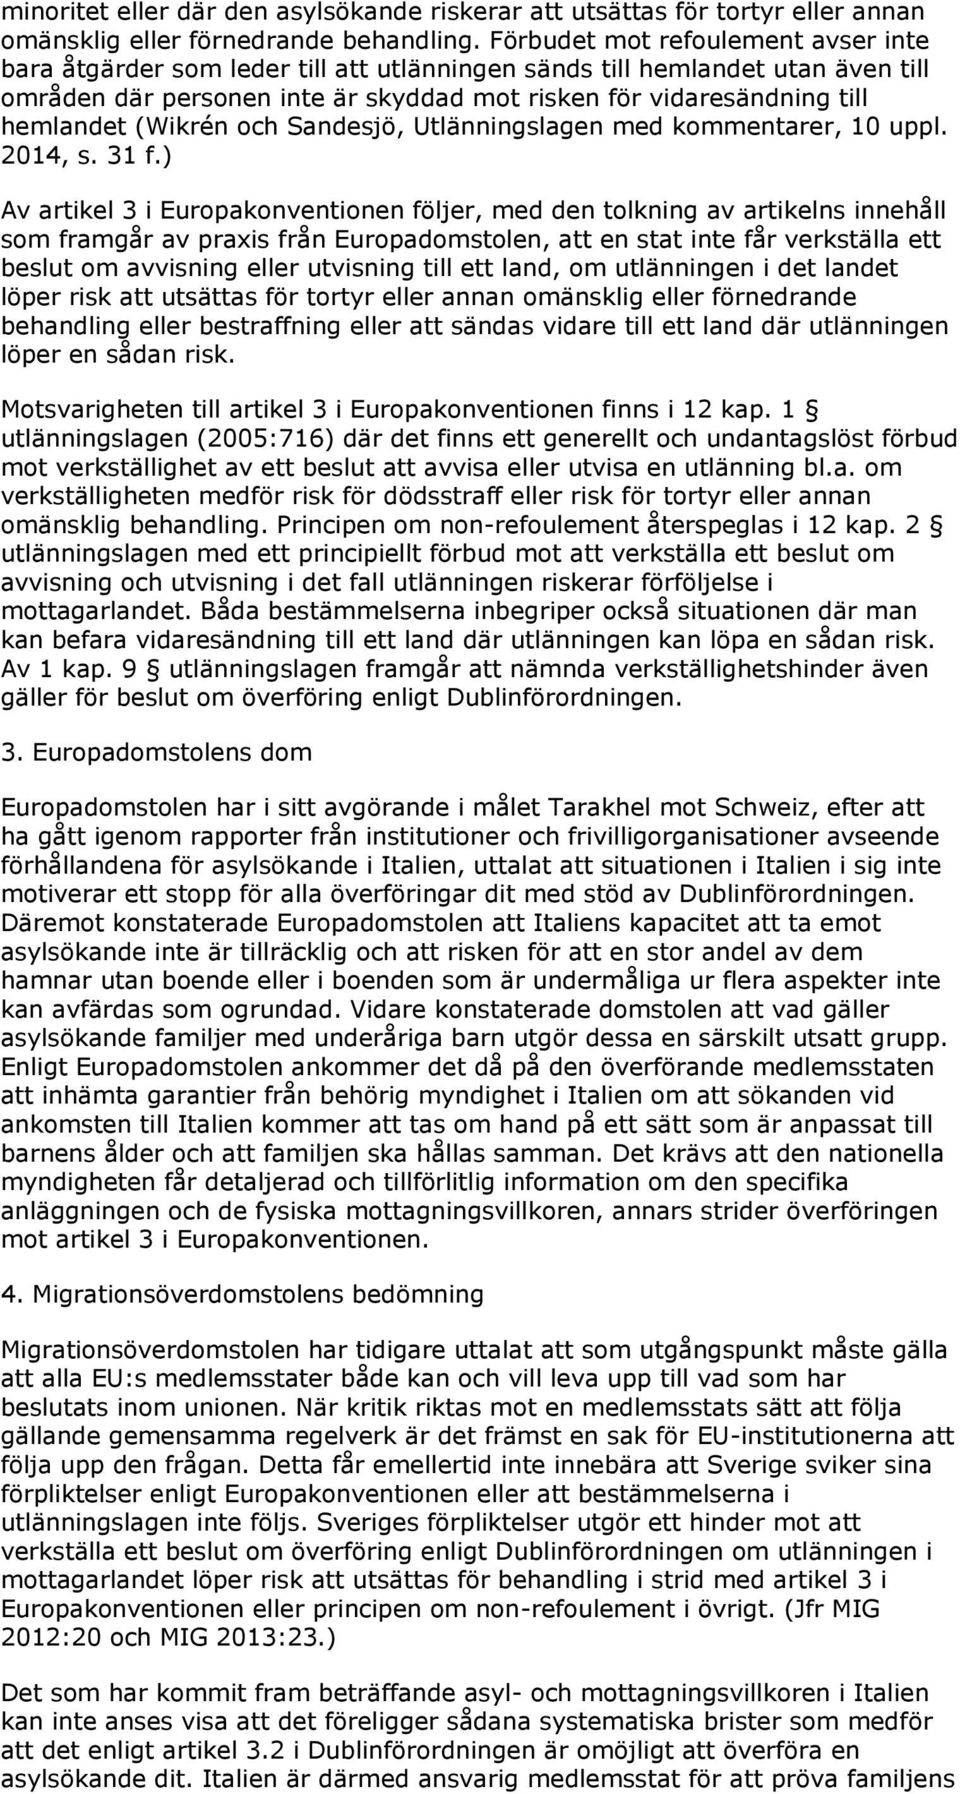 (Wikrén och Sandesjö, Utlänningslagen med kommentarer, 10 uppl. 2014, s. 31 f.